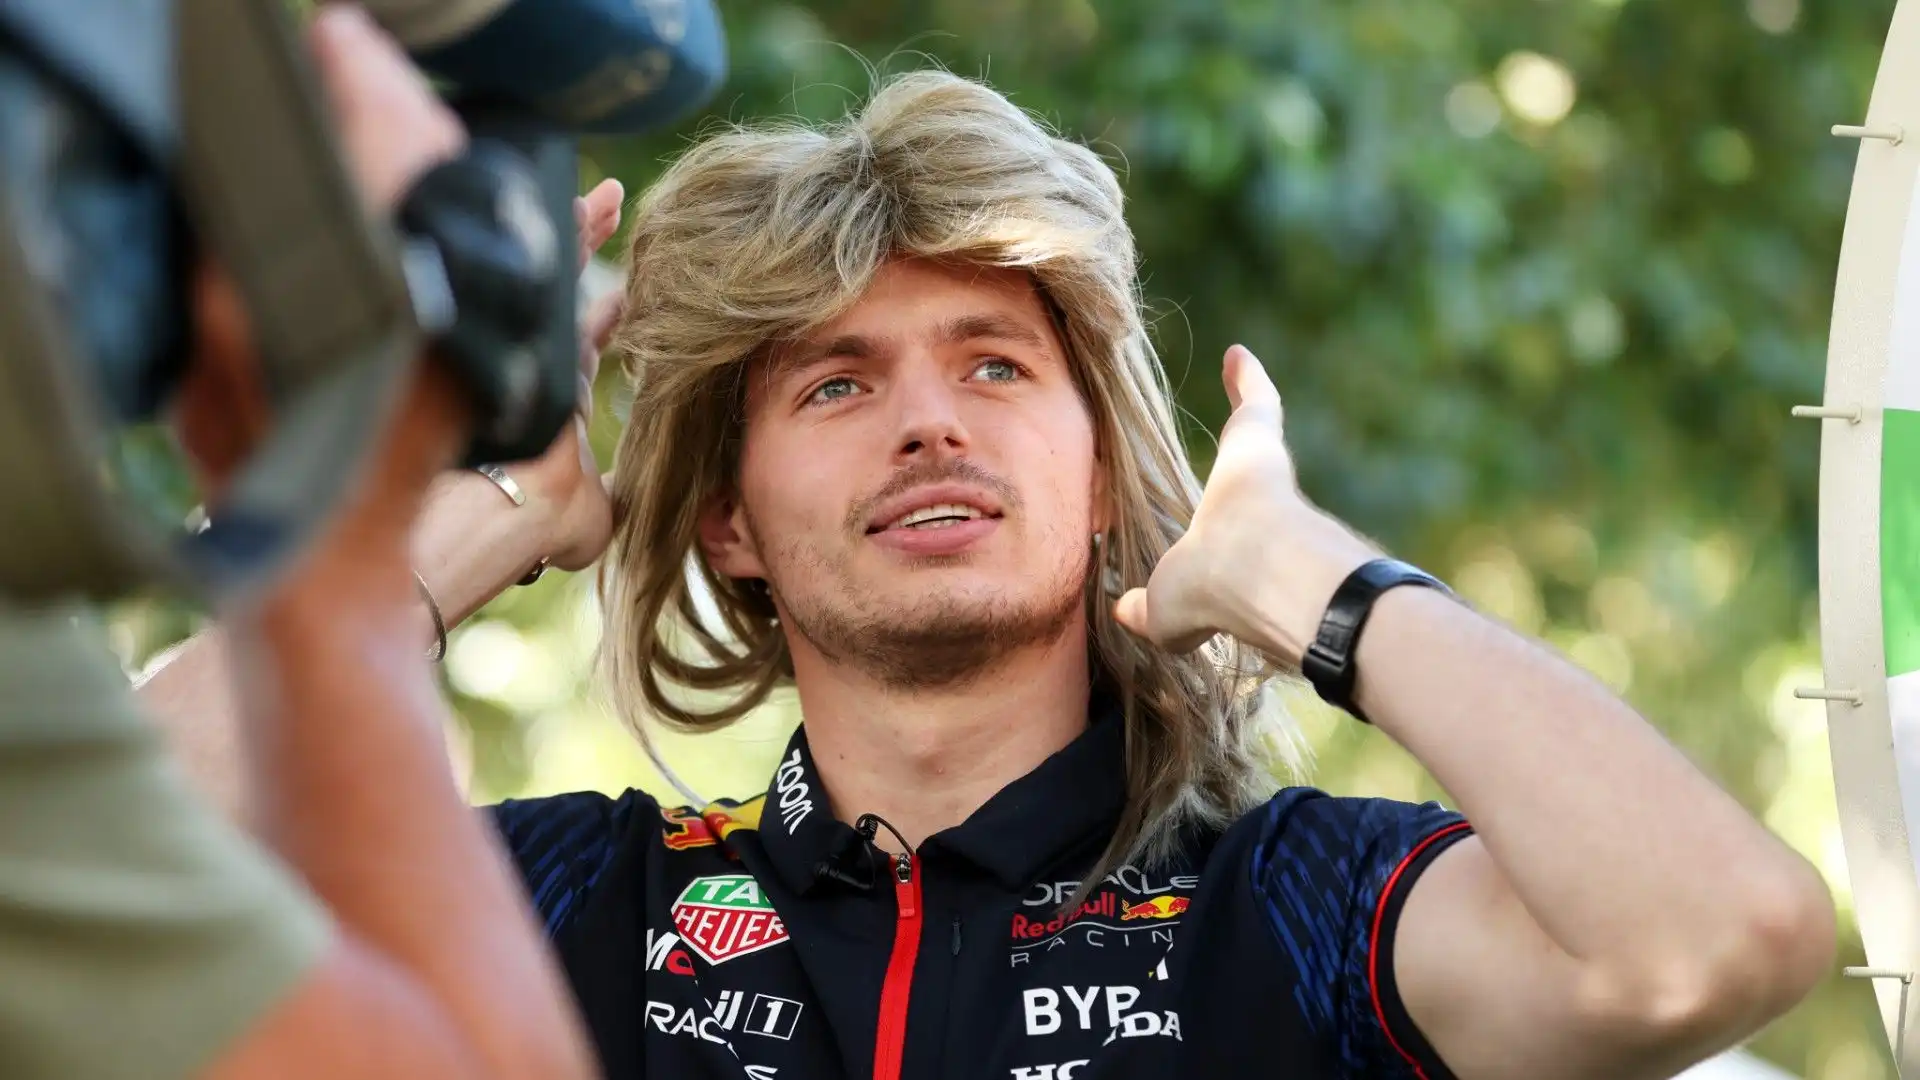 Il campione della Red Bull si è presentato ai tifosi con una parrucca bionda in testa